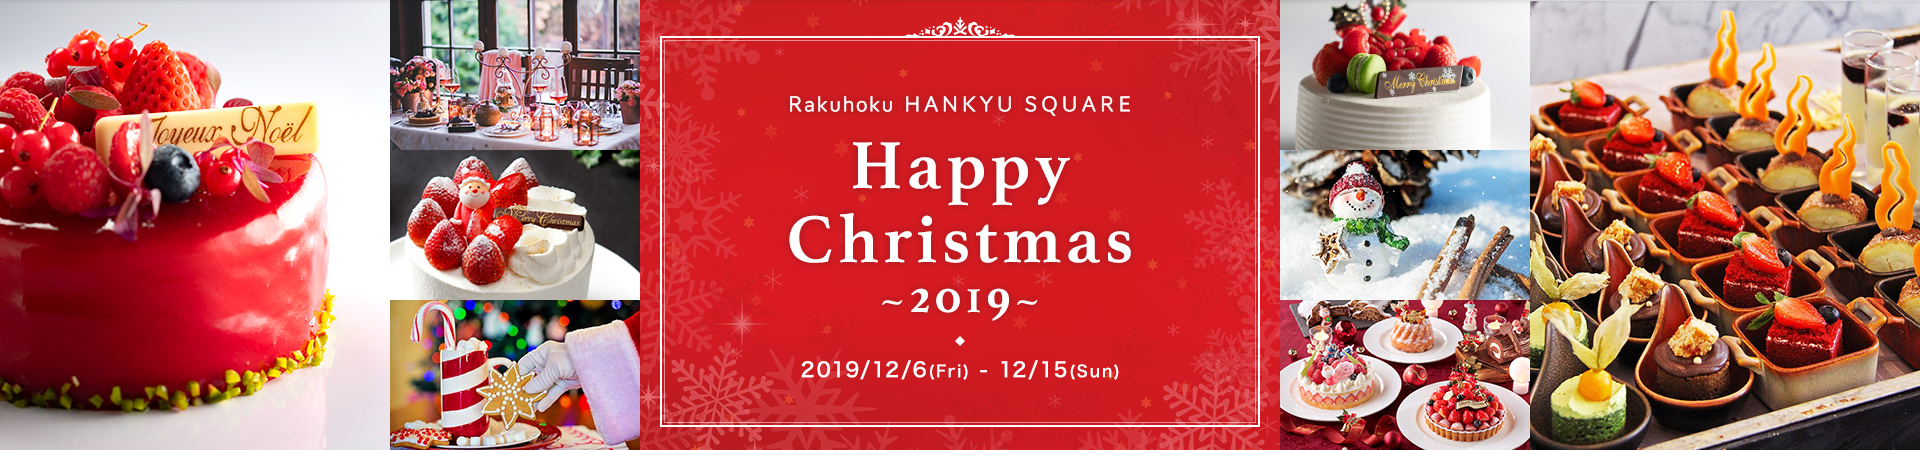 Rakuhoku HANKYU SQUARE Happy Christmas ~2019~ 2019/12/6(Fri)-12/15(sun)